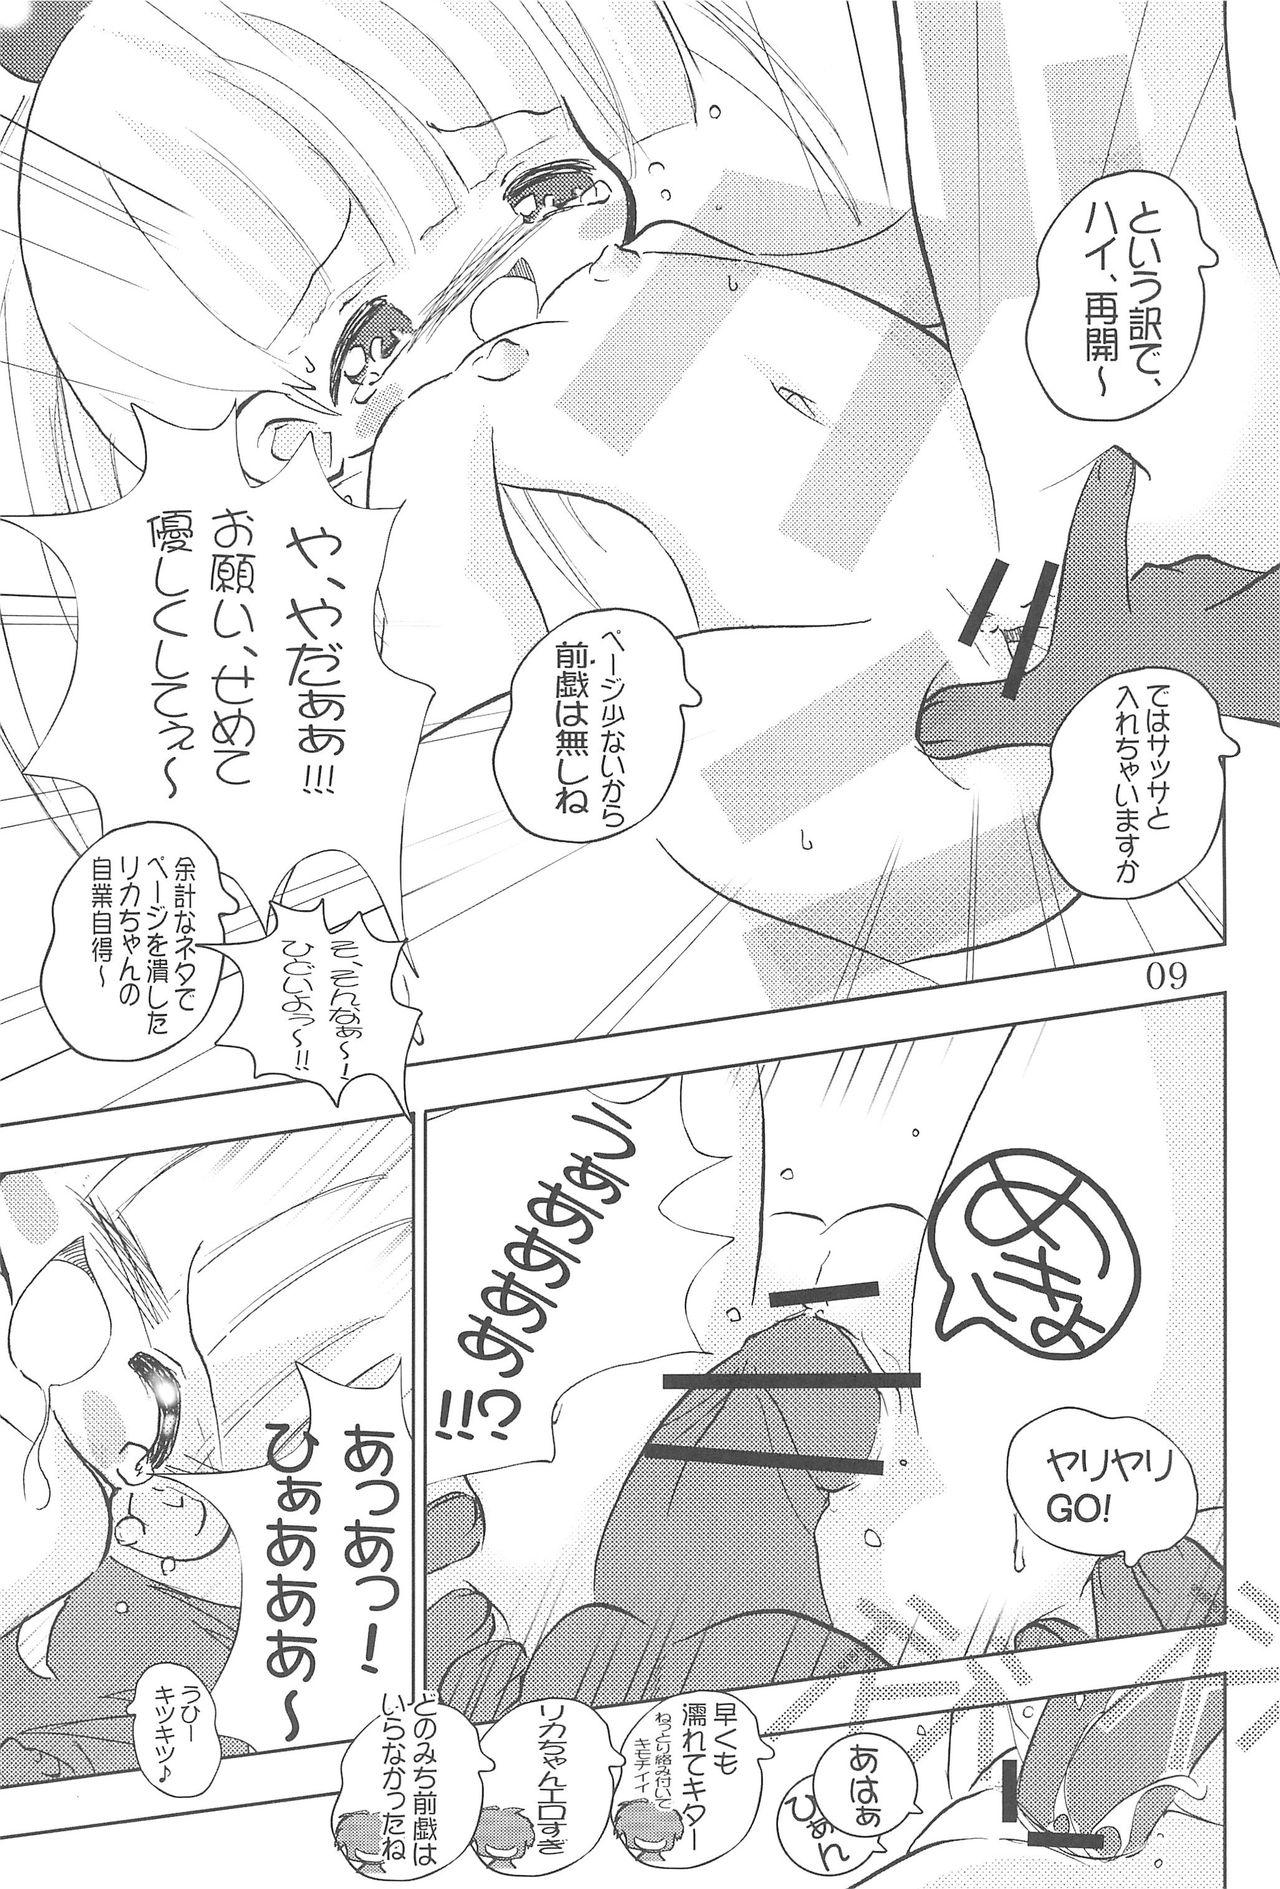 Cocks WataRika - Shuukan watashi no onii-chan Licca vignette Close Up - Page 11